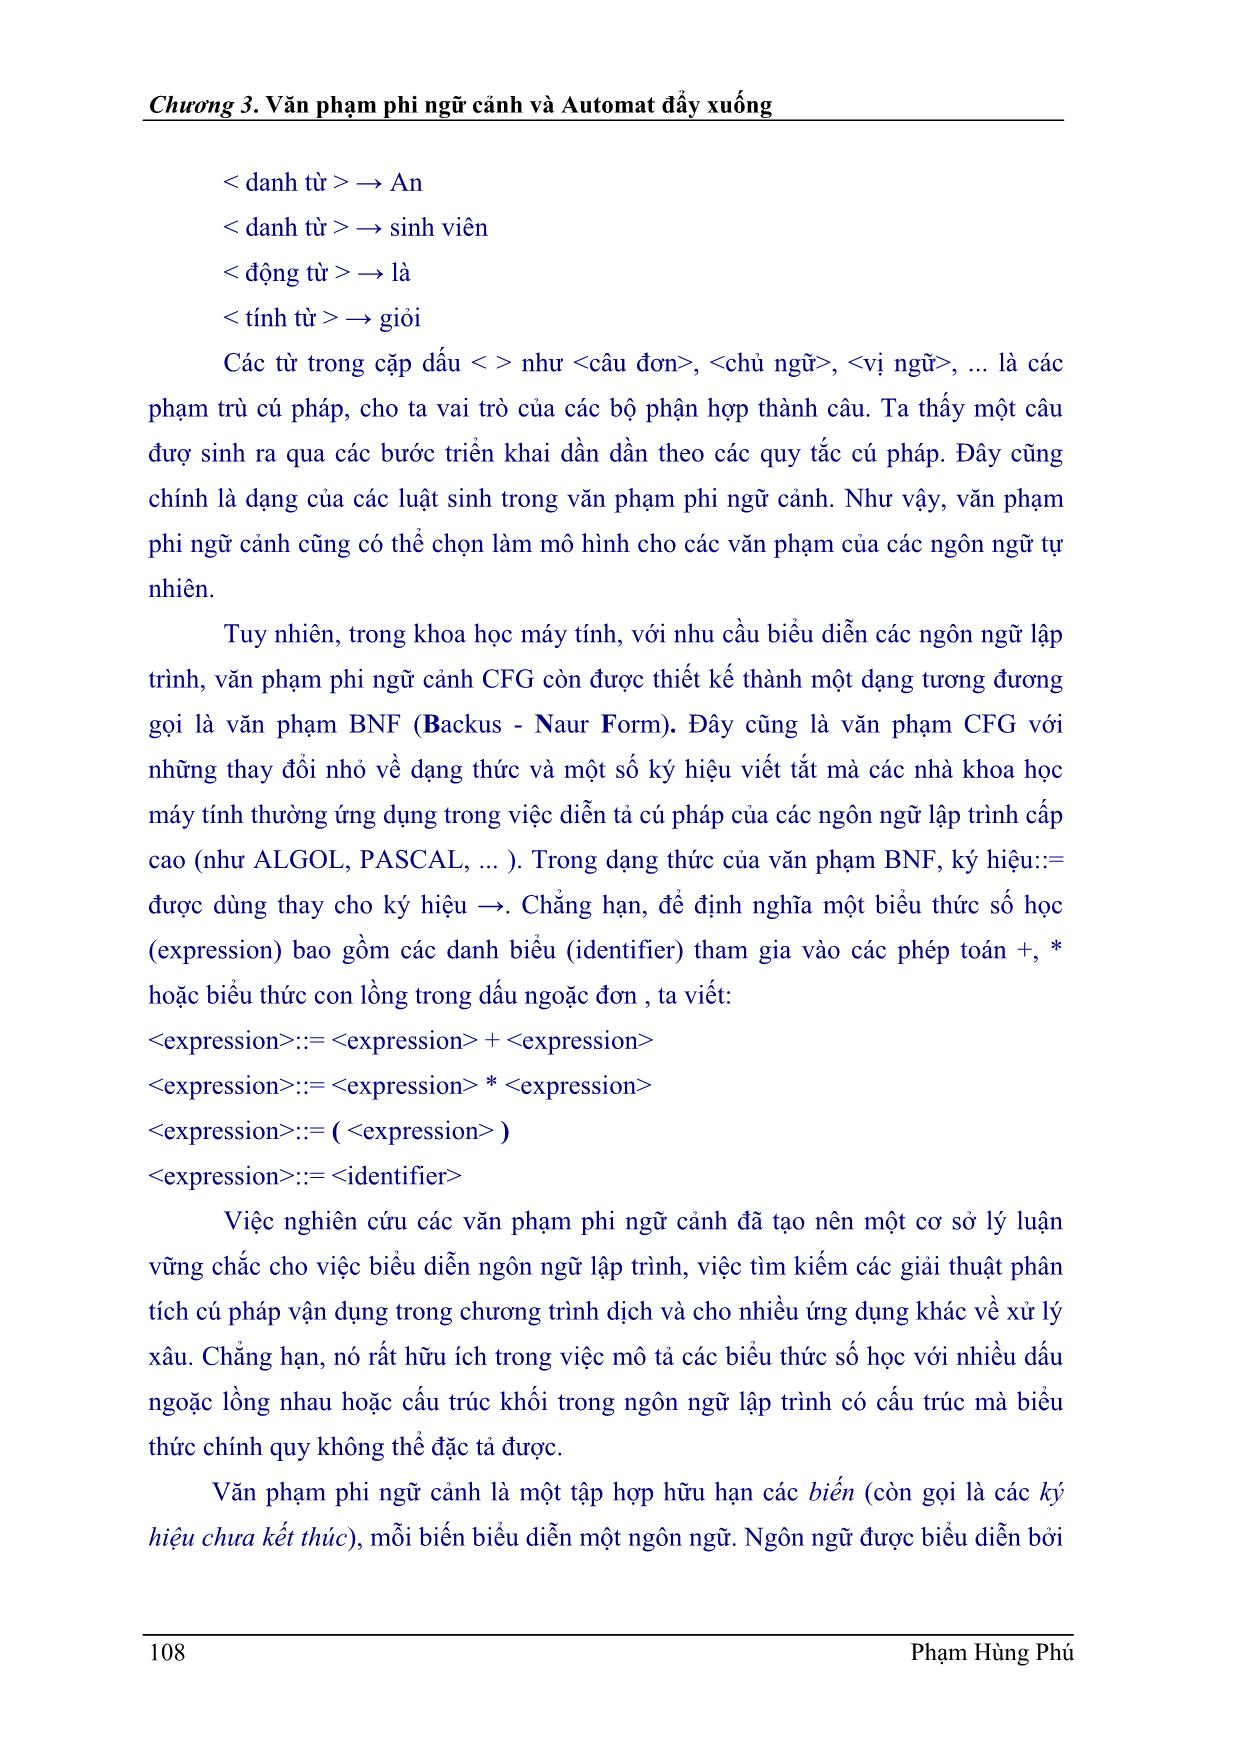 Bài giảng Ngôn ngữ hình thức - Chương 3: Văn phạm phi ngữ cảnh và Automat đẩy xuống - Phạm Hùng Phú trang 2